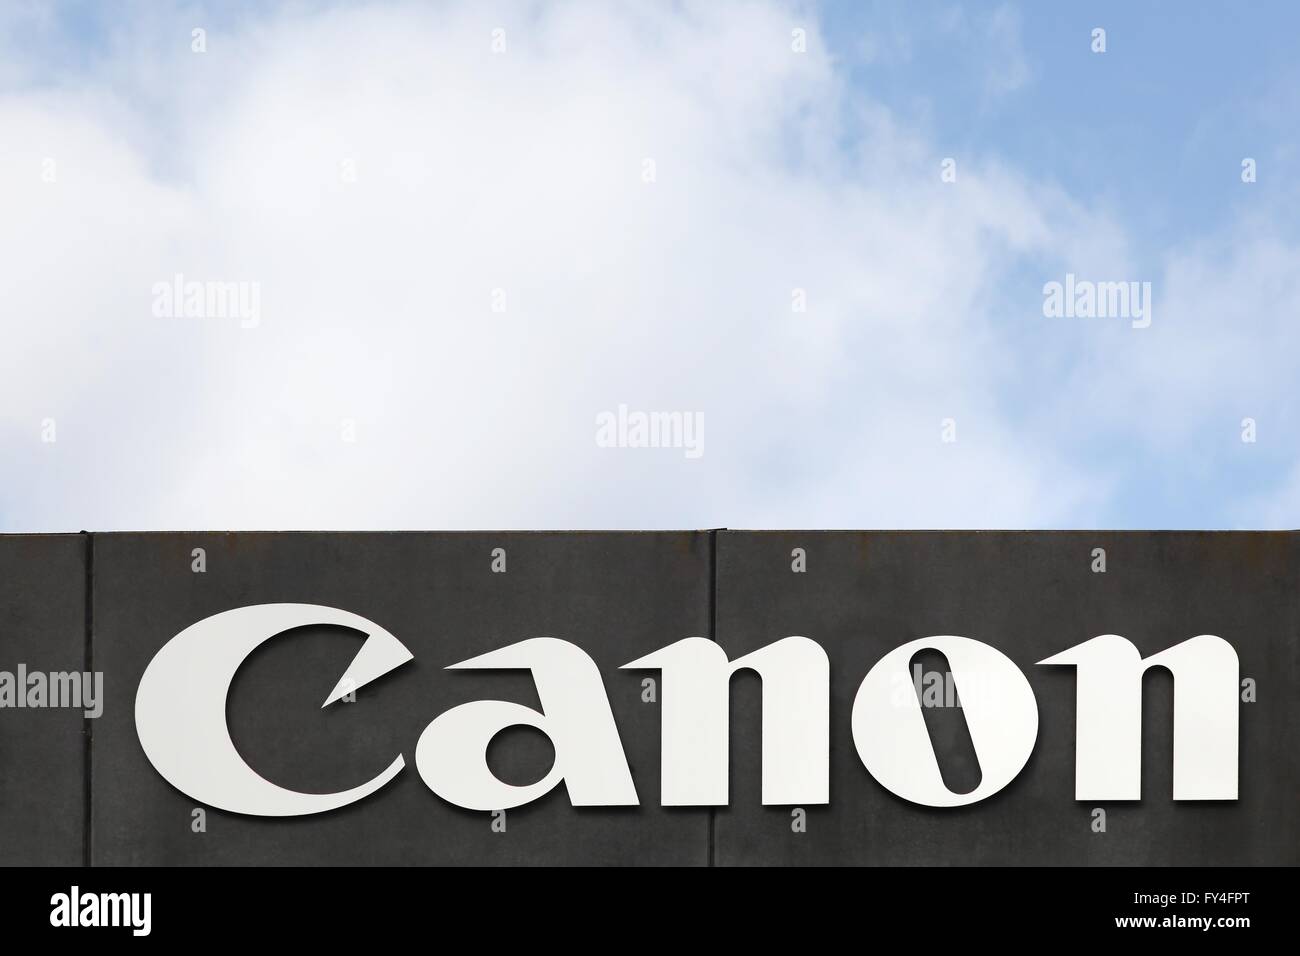 Canon logo on a facade Stock Photo